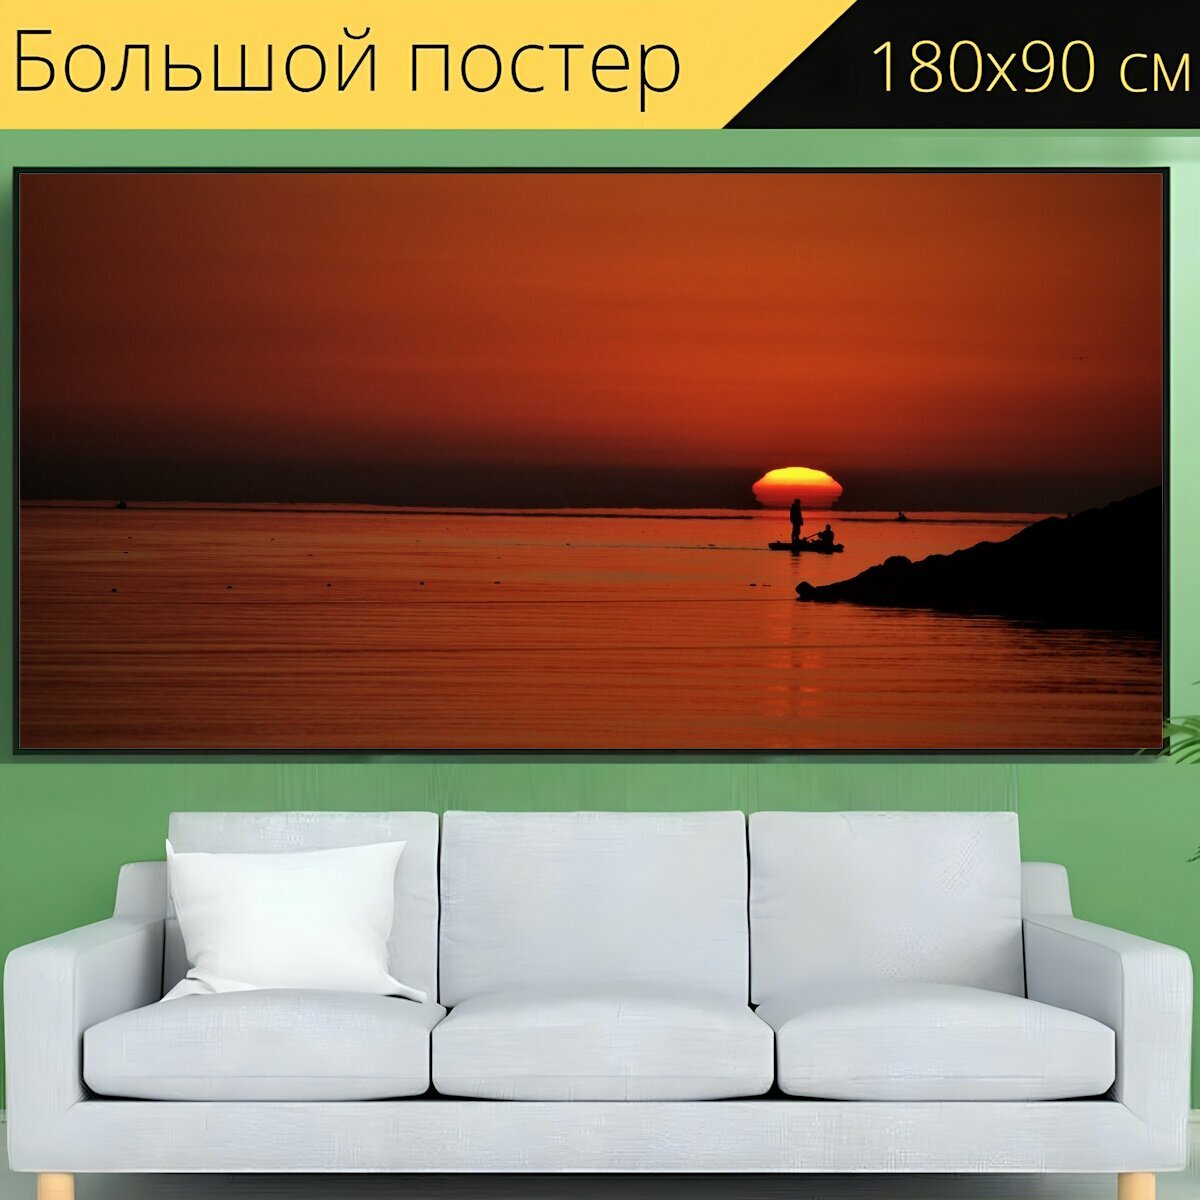 Большой постер "Каспийское море, пляж чалус, восход" 180 x 90 см. для интерьера